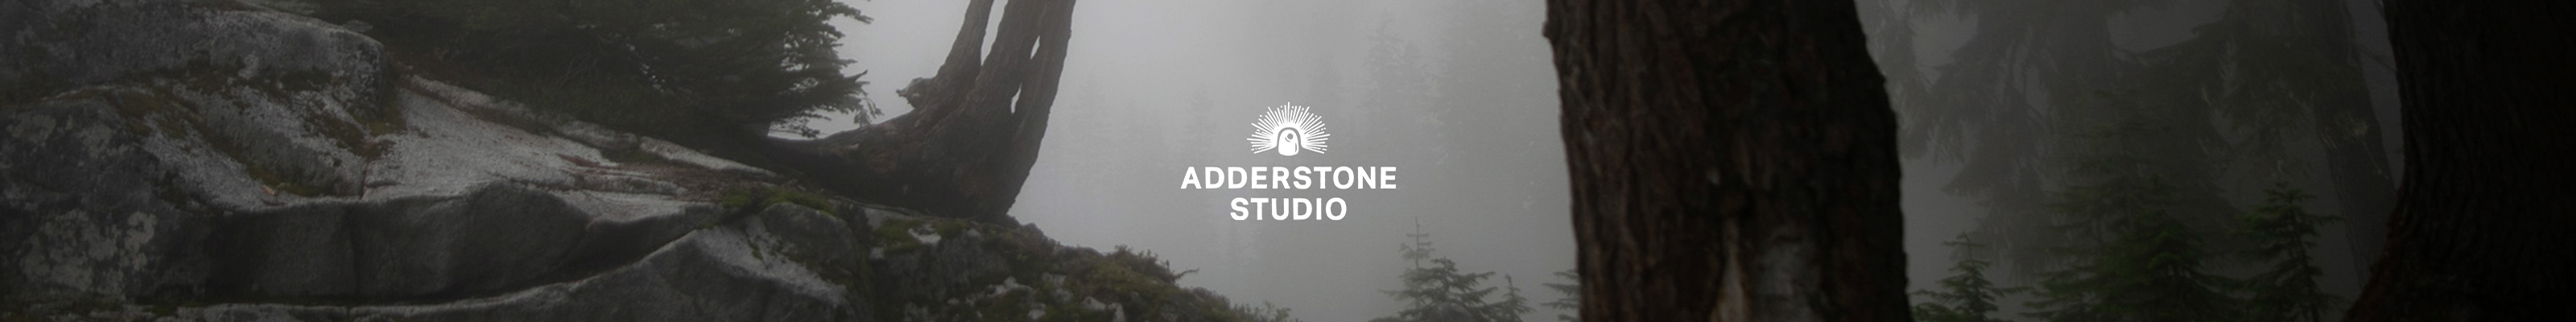 Adderstone Studio's profile banner